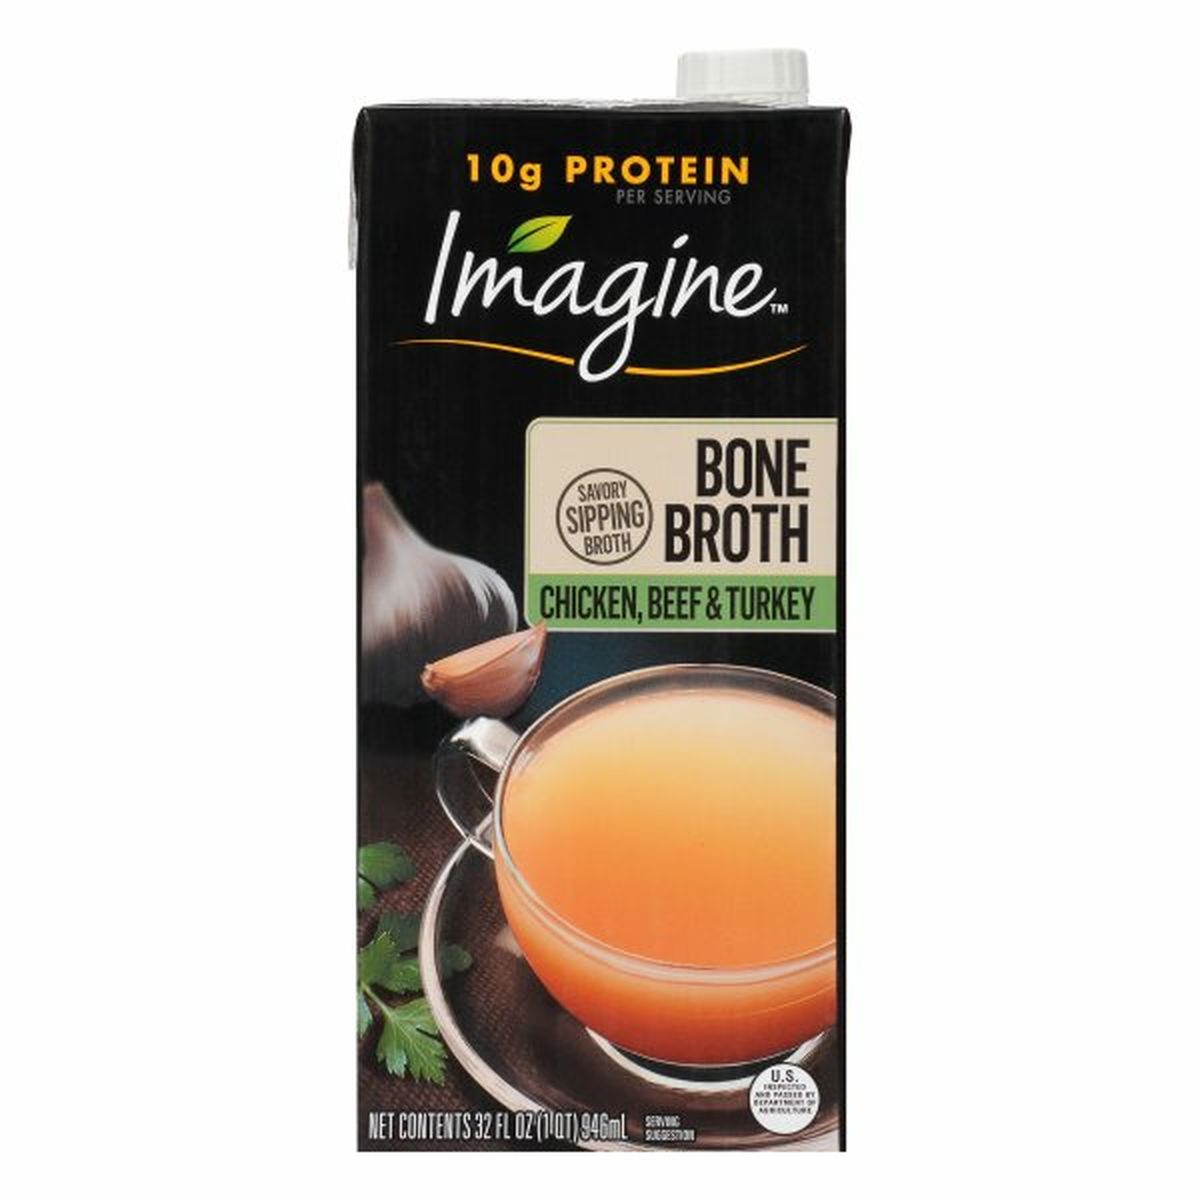 Calories in Imagine Bone Broth, Chicken Beef & Turkey